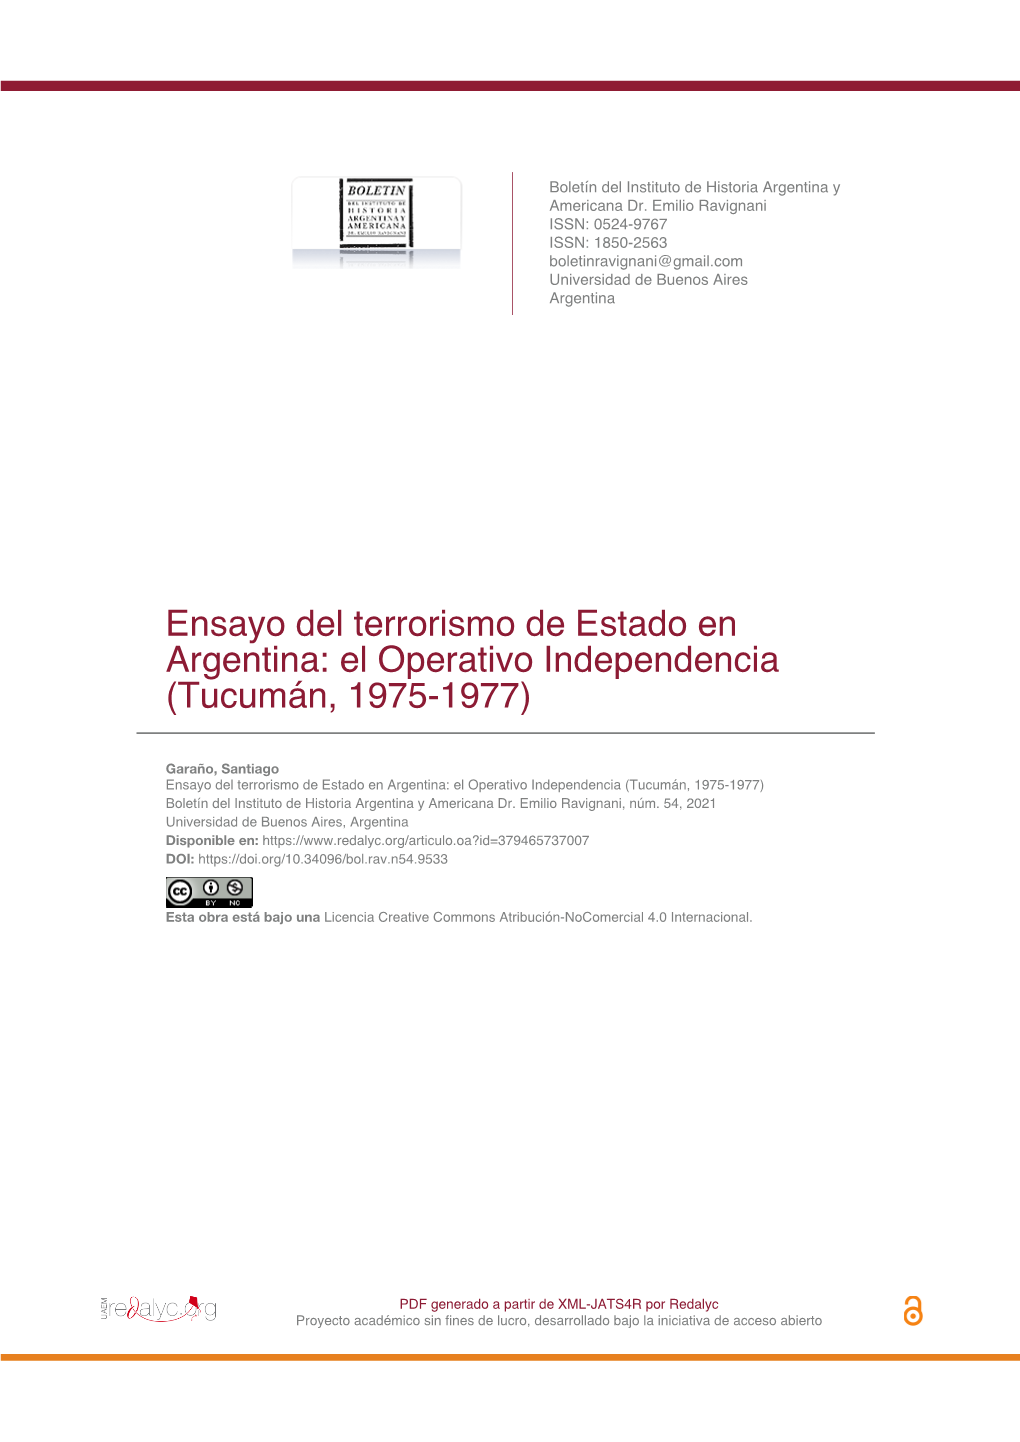 El Operativo Independencia (Tucumán, 1975-1977)